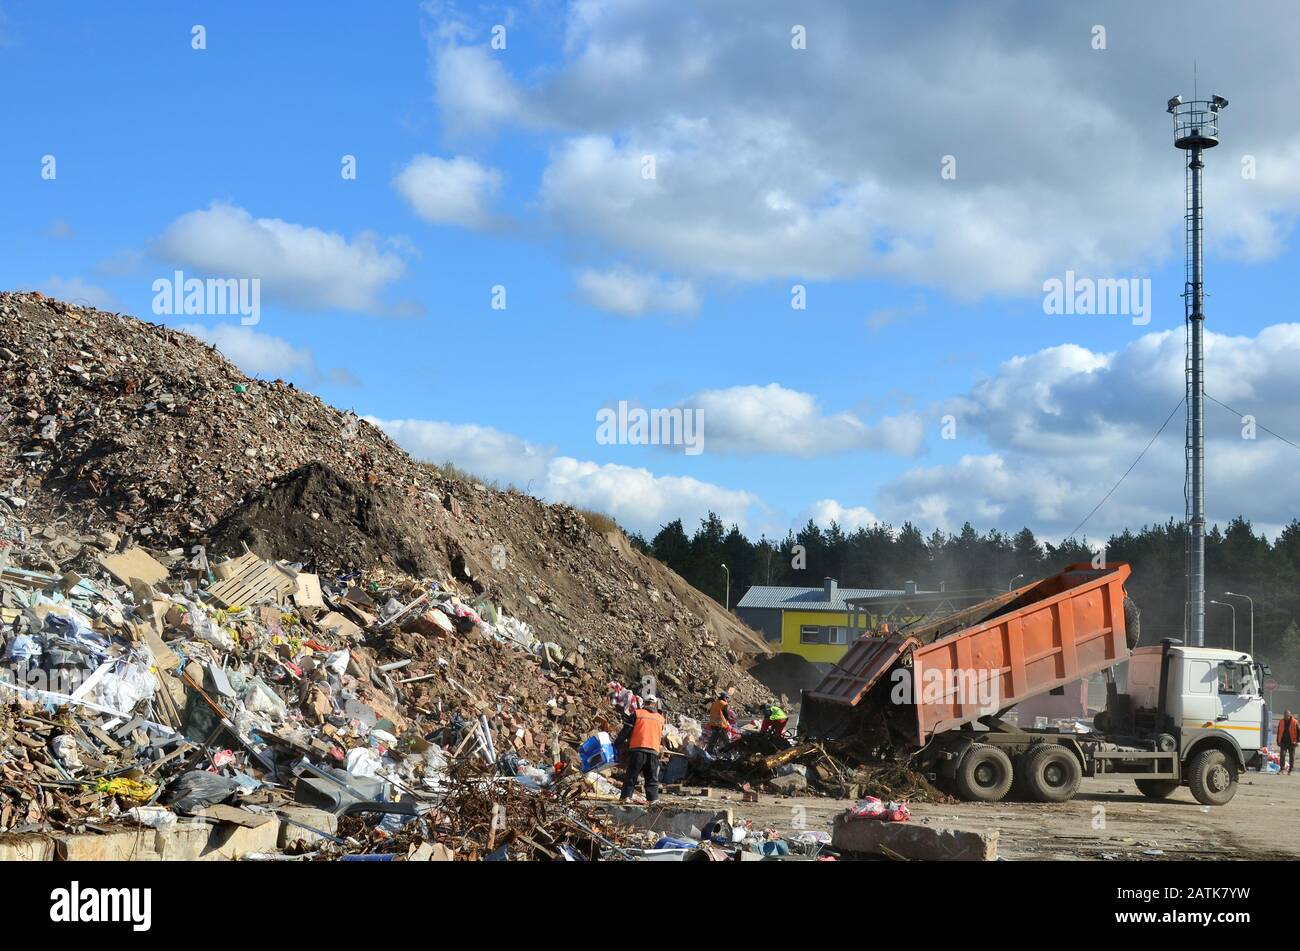 Le déchargement des camions à ordures déchets de construction contenant à la décharge. Usine de traitement de traitement de déchets industriels. Le recyclage des déchets et de béton Banque D'Images